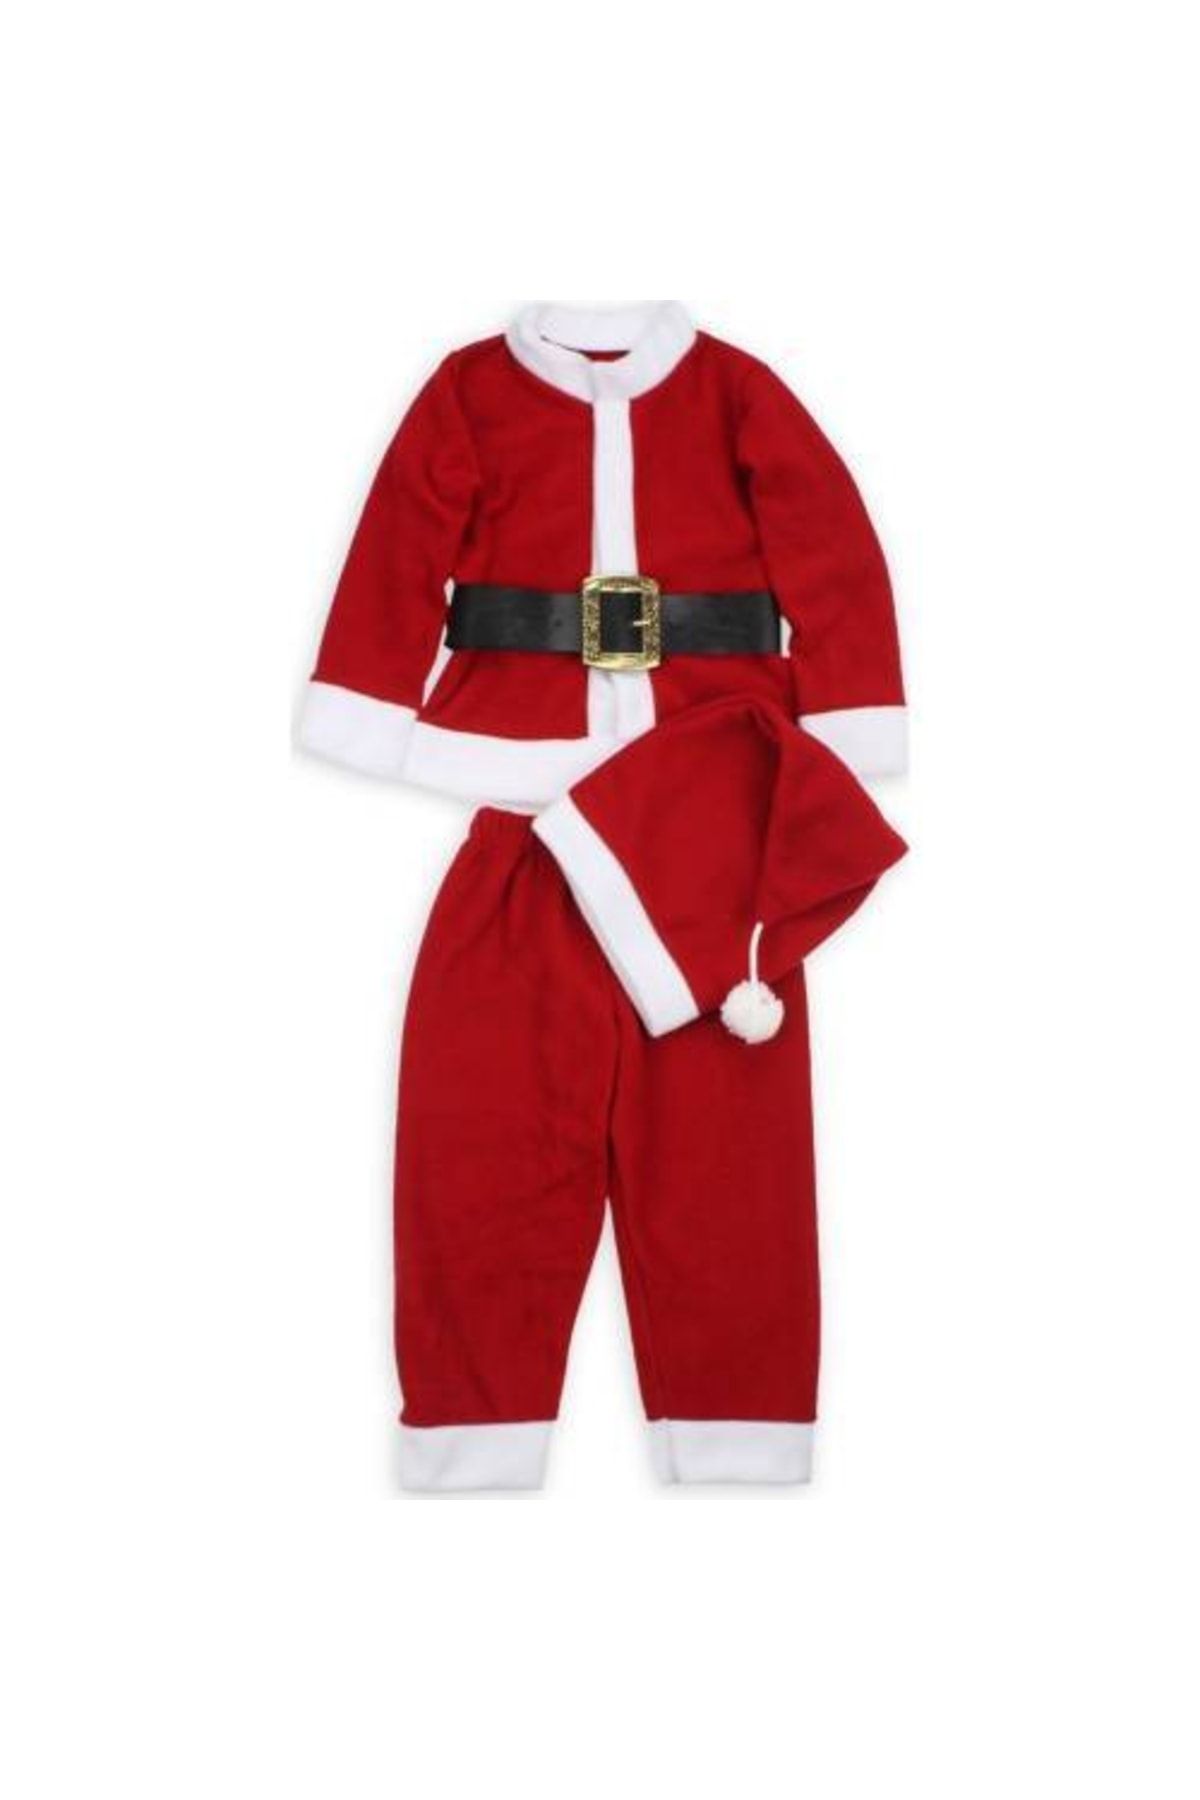 Mashotrend Erkek Çocuk Noel Kostümü - Noel Baba Kostümü - Yılbaşı Kostüm - Happy Christmas - Noel Kostüm